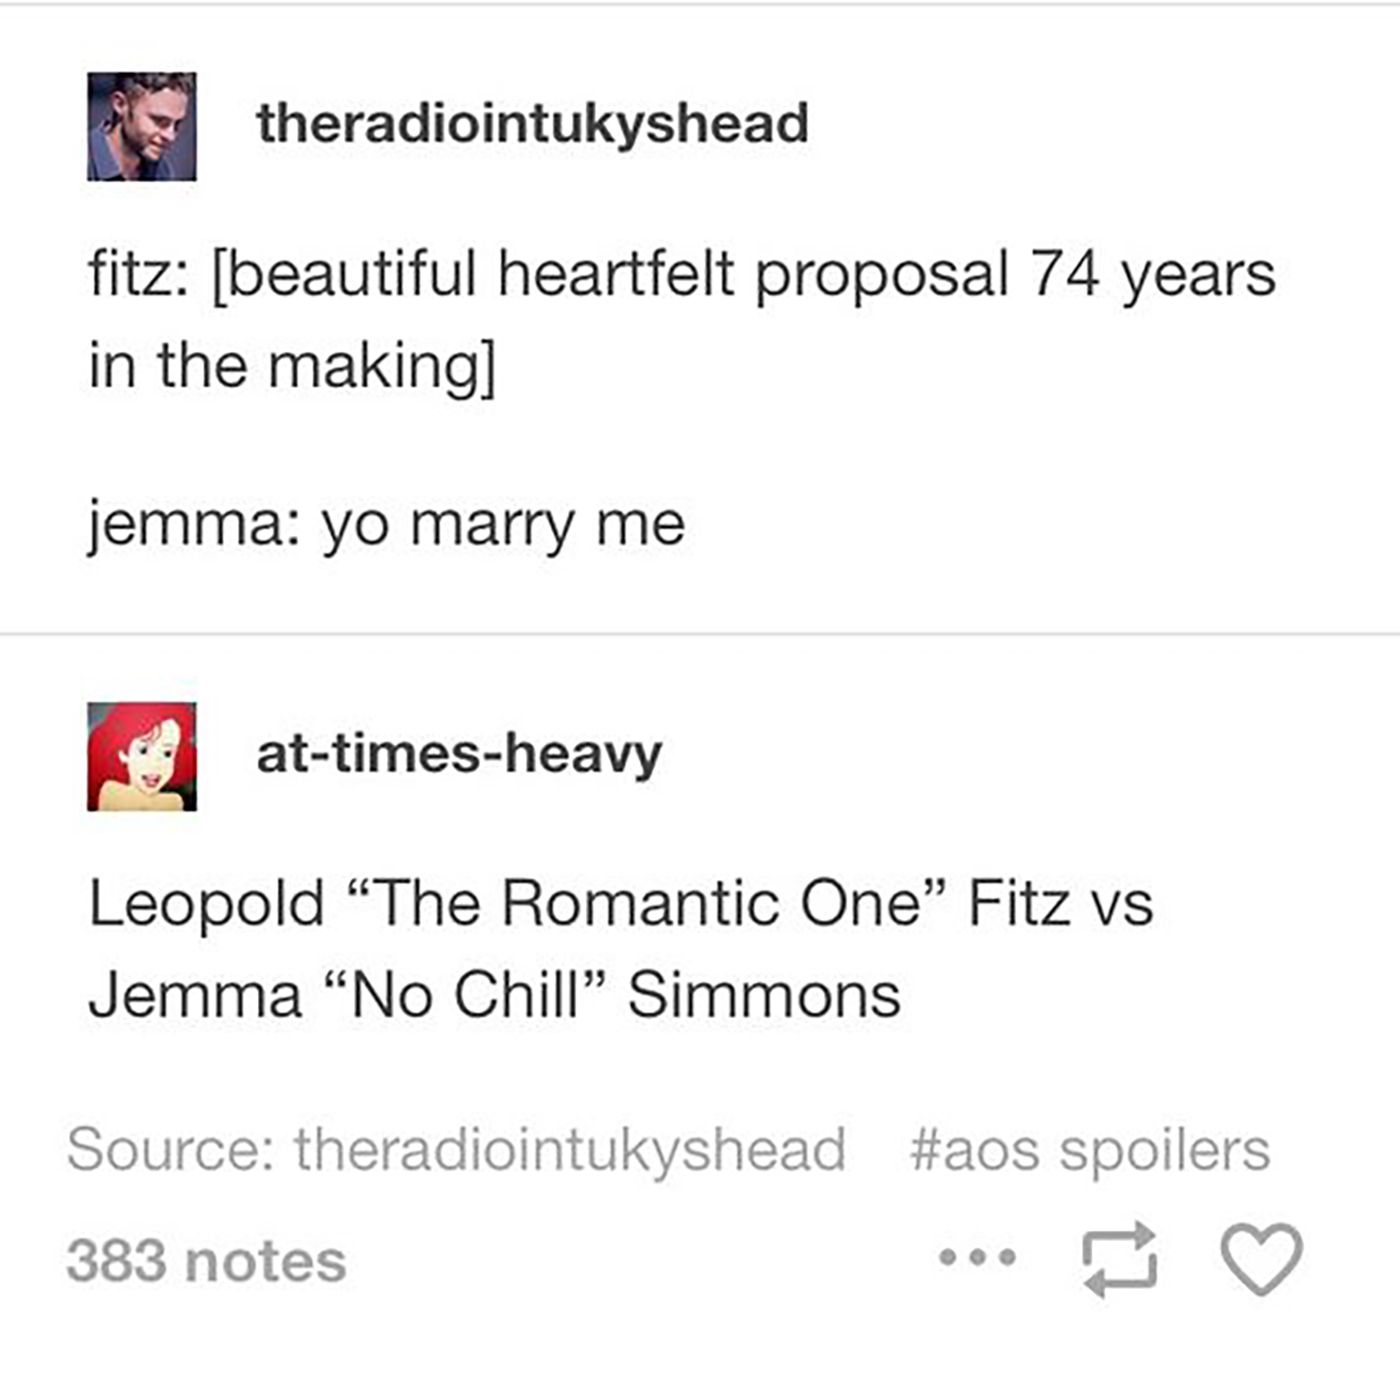 Fitzsimmons Proposal